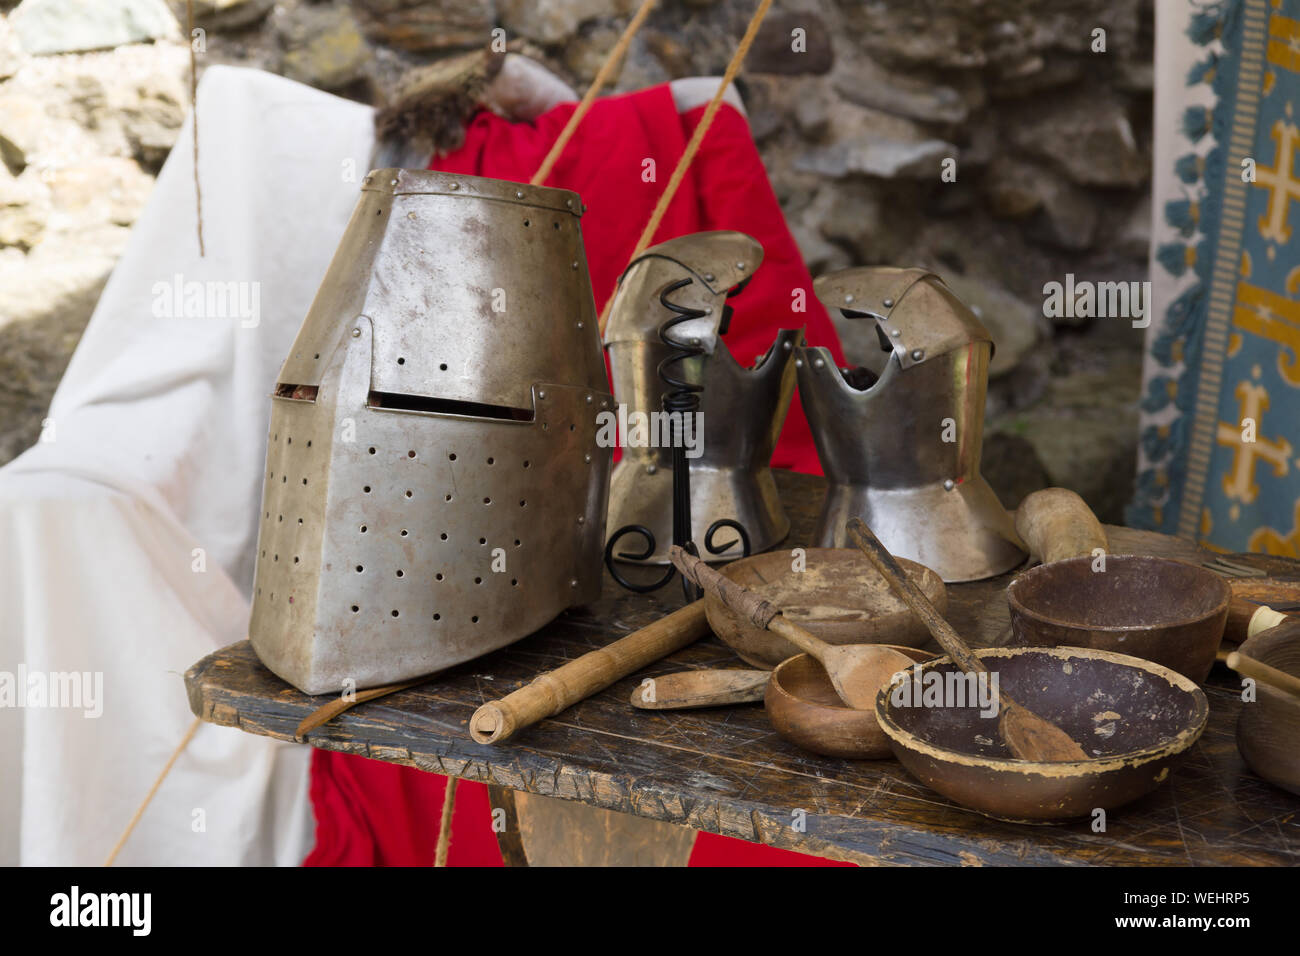 Mittelalterliche 12. Jahrhundert geschlossenen Helm oder großen Helm und Handschuhe mit Essgeschirr in einem Re-enactment Camp Stockfoto